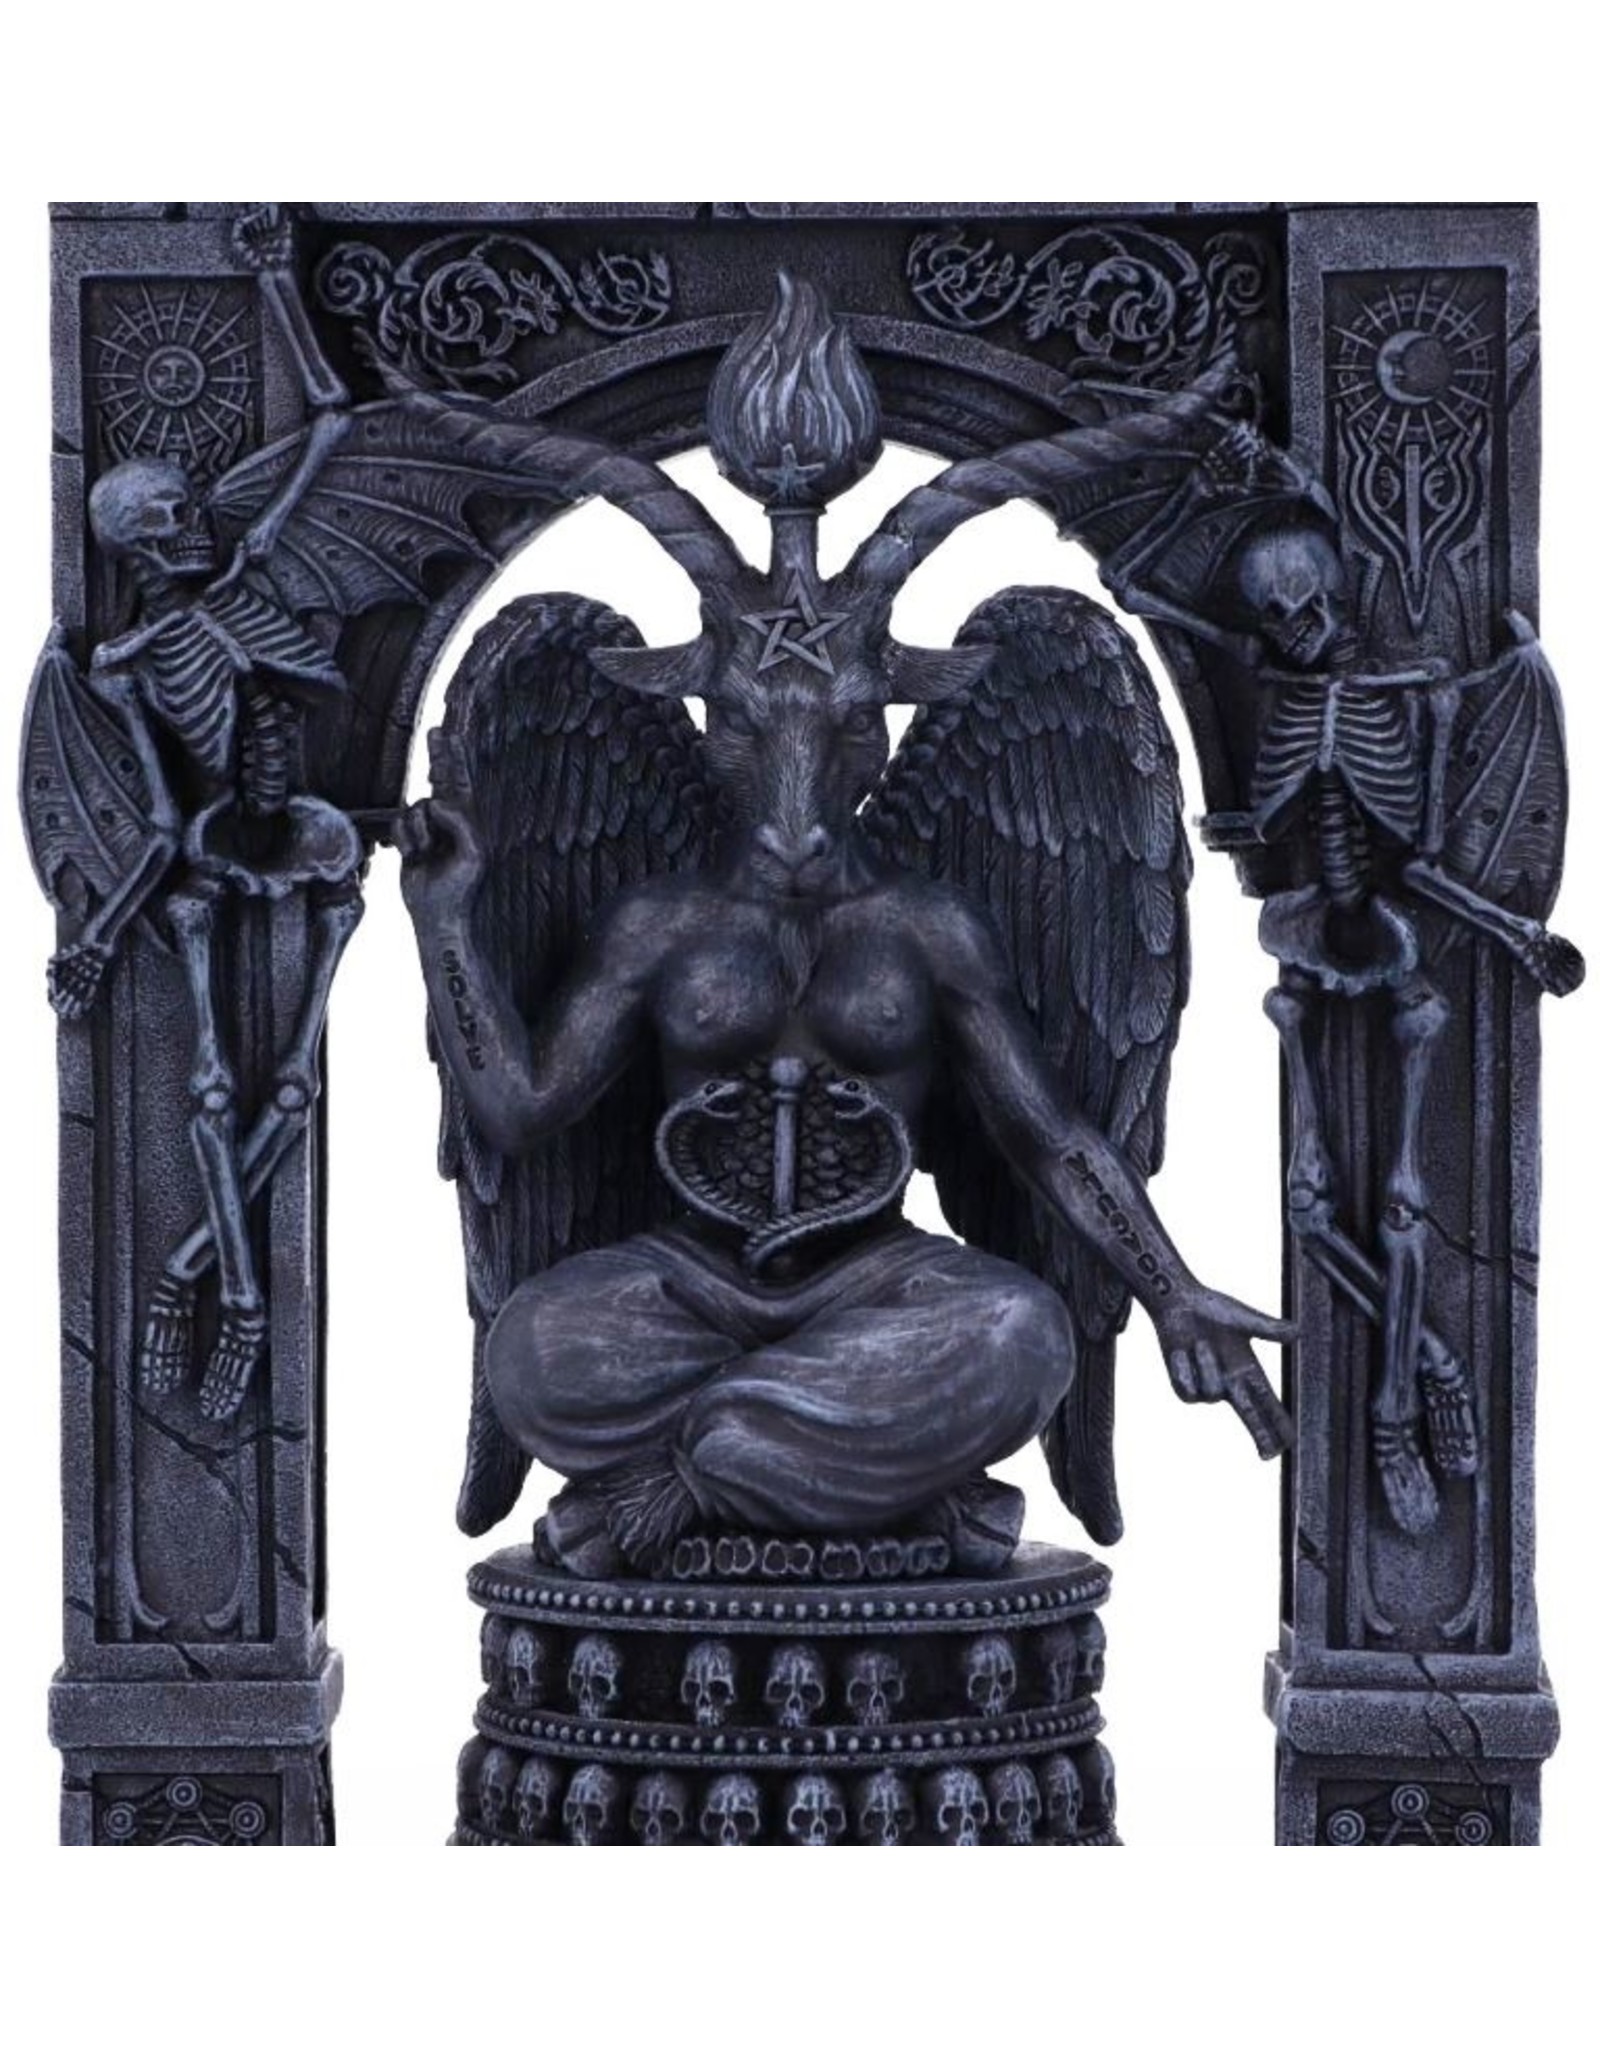 NemesisNow Giftware & Lifestyle - Baphomet's Temple Ornament 28cm - Nemesis Now